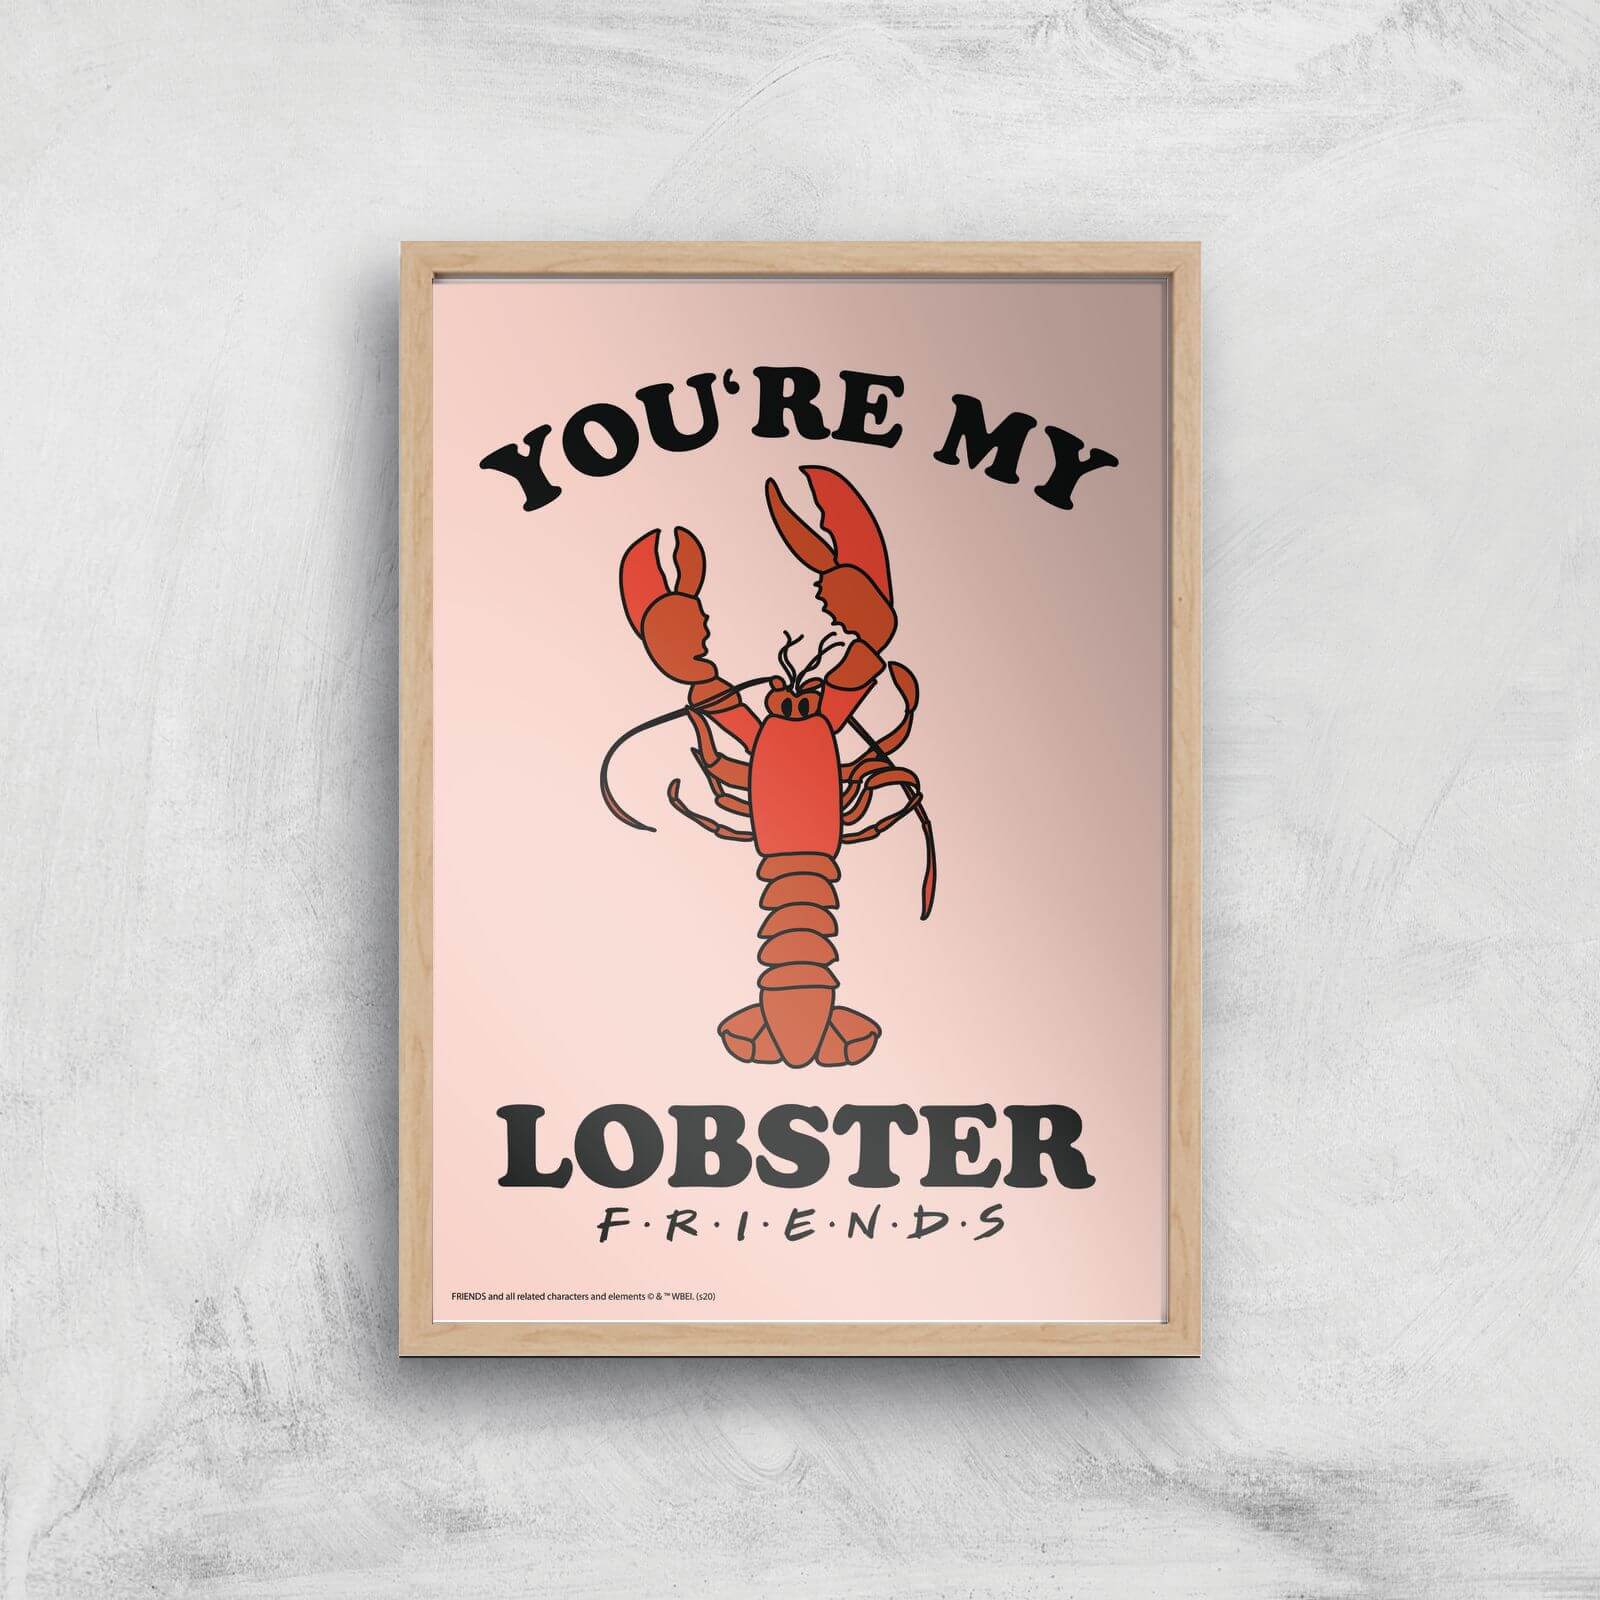 Friends Lobster Giclee Art Print - A2 - Wooden Frame